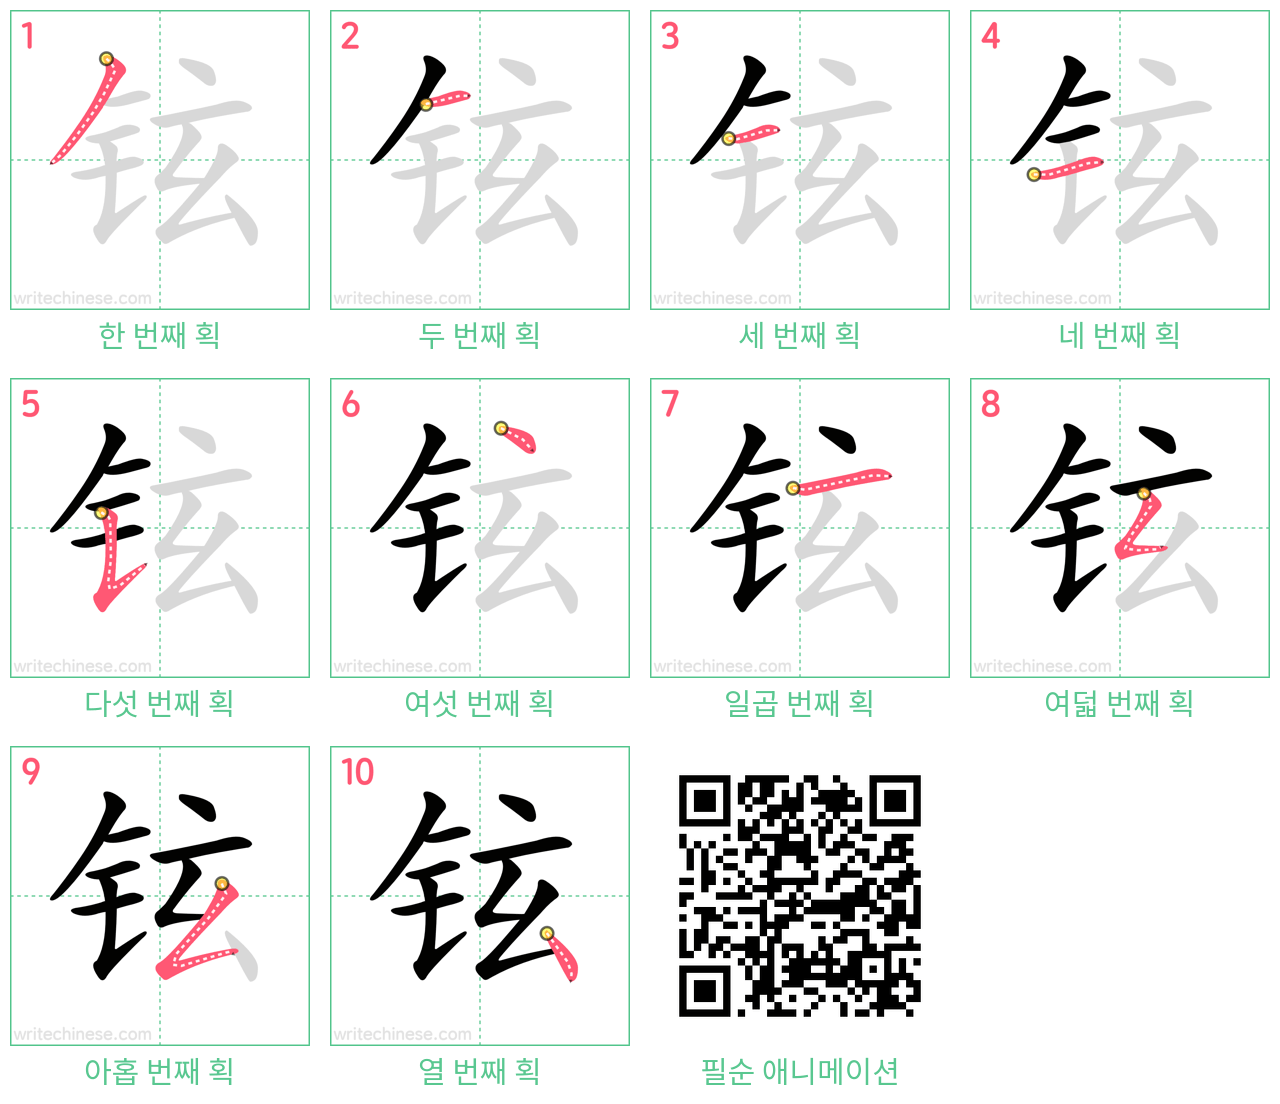 铉 step-by-step stroke order diagrams